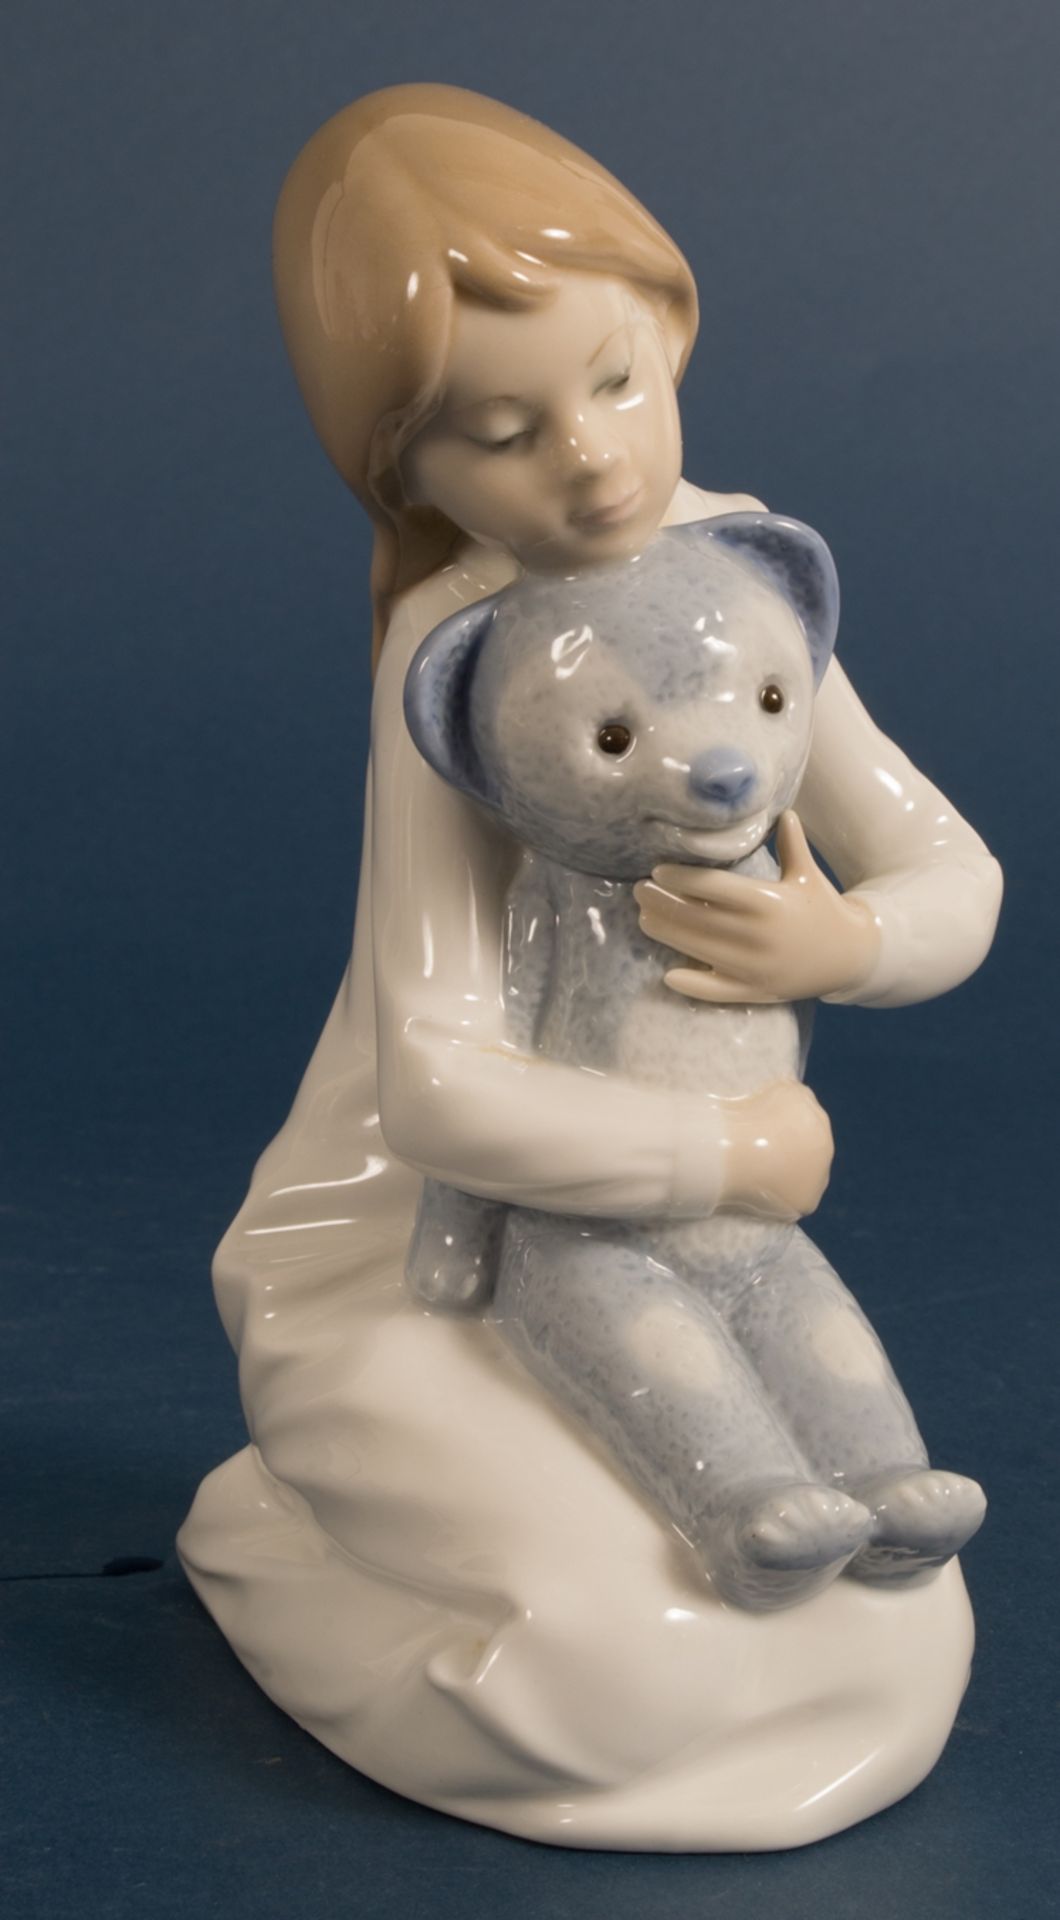 DAO - Porzellanfirgur "Mädchen mit Teddy". Höhe ca. 18 cm. Schöner Erhalt. - Bild 2 aus 4